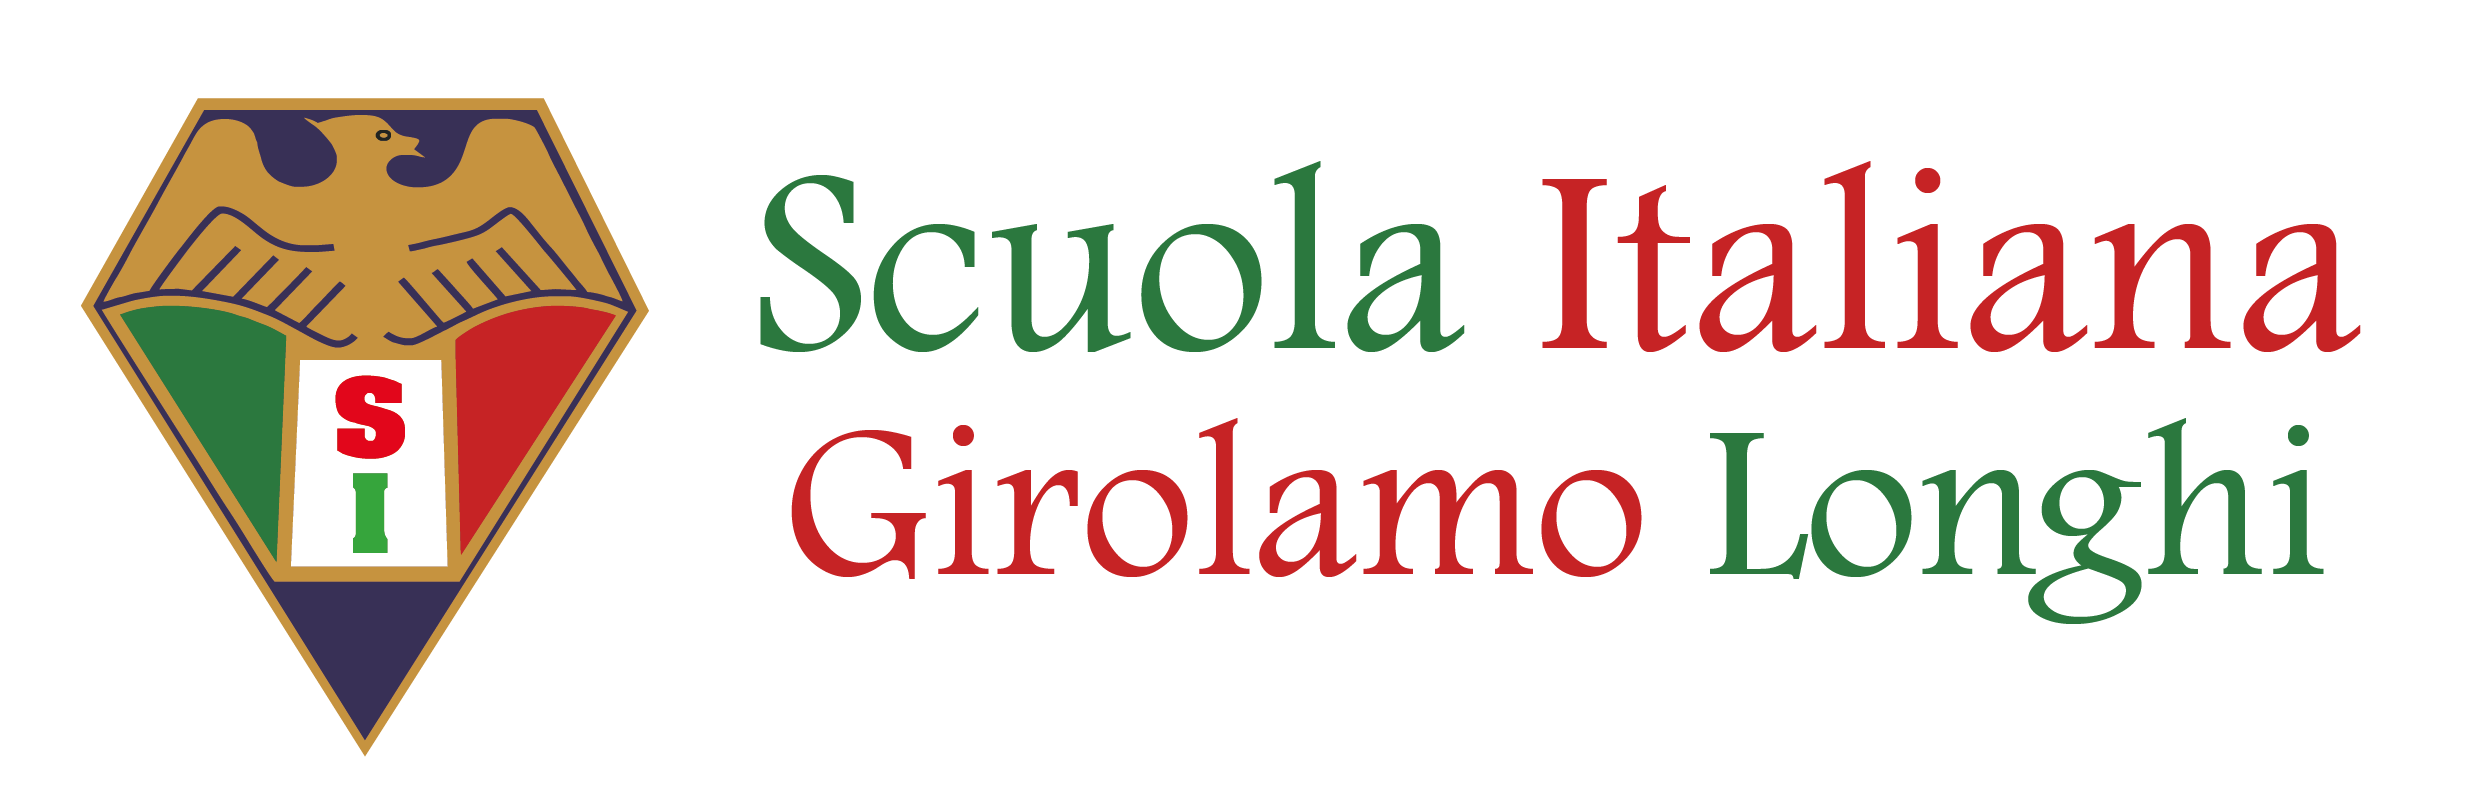 Scuola Italiana Girolamo Longhi